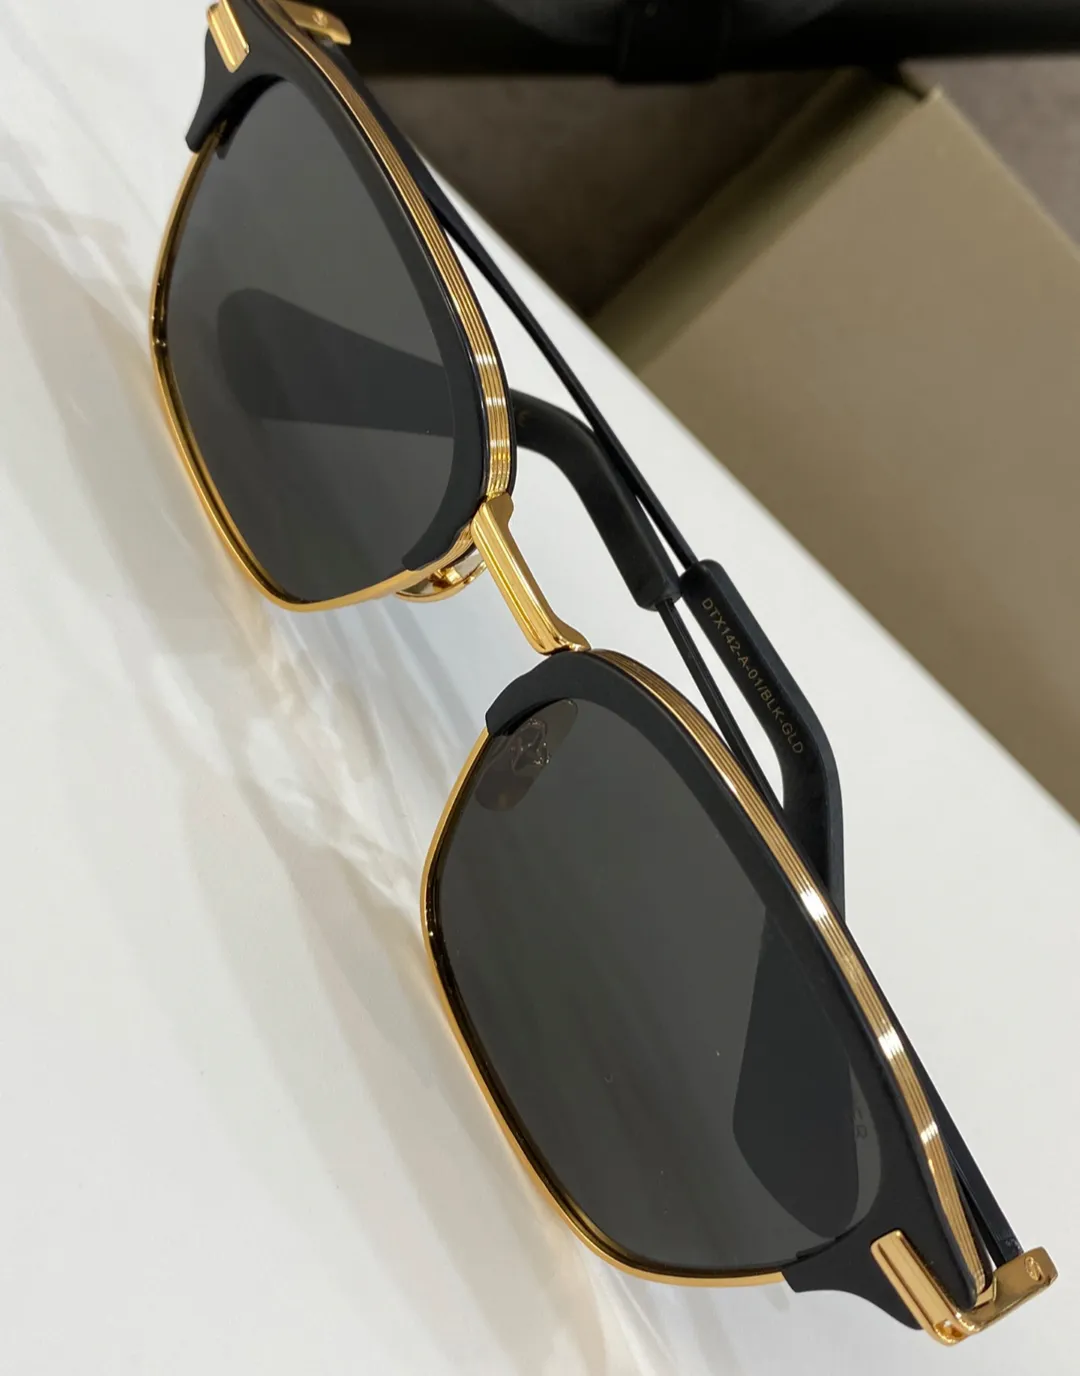 Lunettes de soleil pilote carrées noir mat or gris foncé lentille Sport lunettes de soleil pour hommes Sonnenbrille UV lunettes avec Box295D